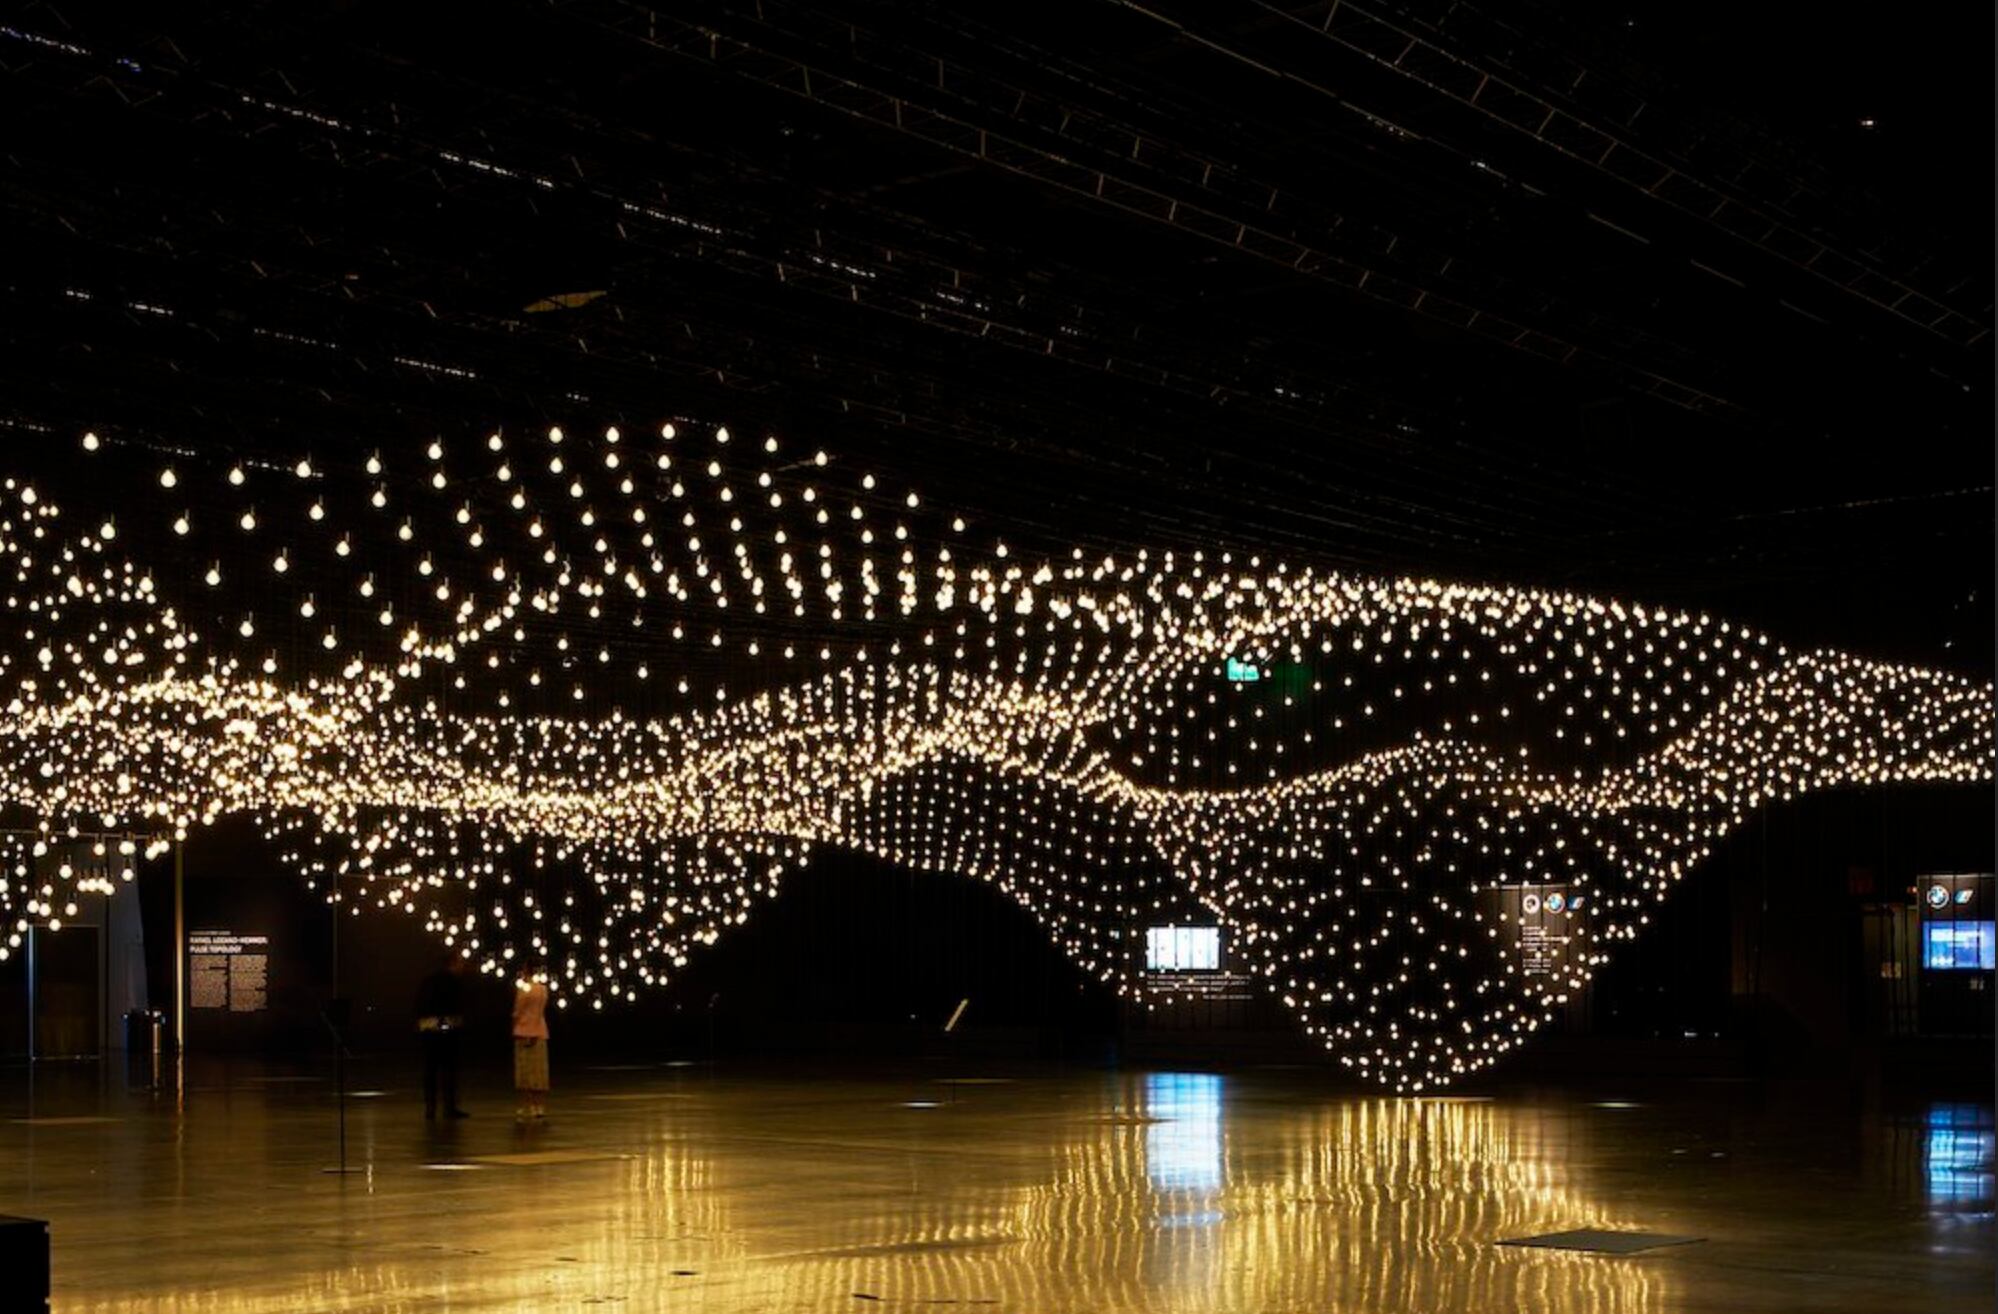 La obra “Pulse Topology”, de Rafael Lozano-Hemmer, tiene 3.000 bombillas de luz.